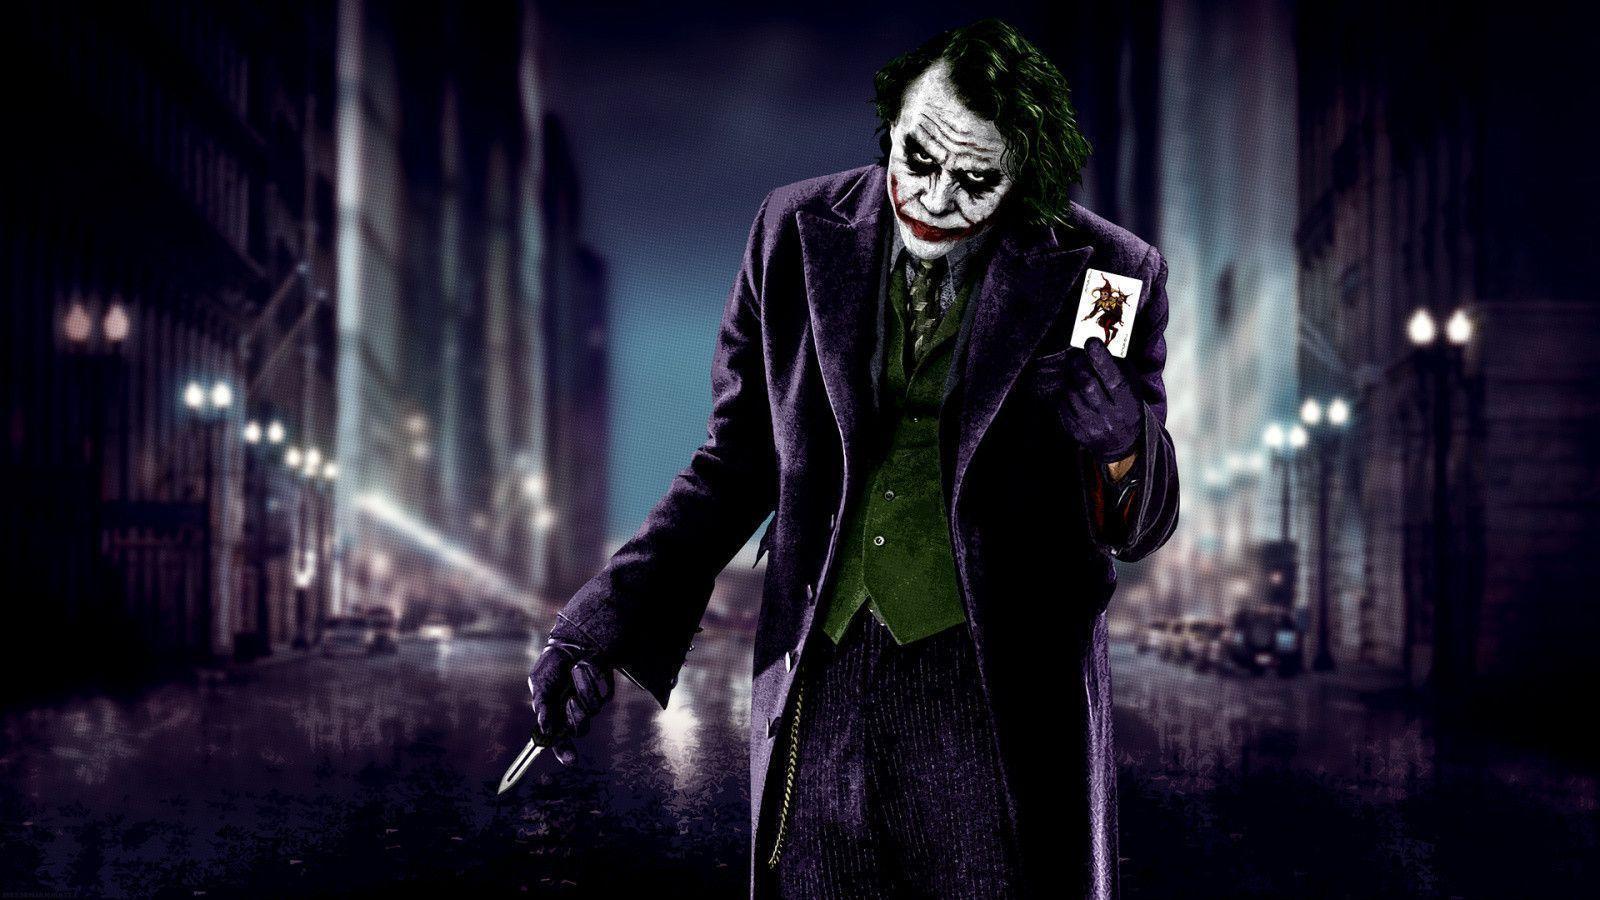 The Joker The Dark Knight Wallpaper